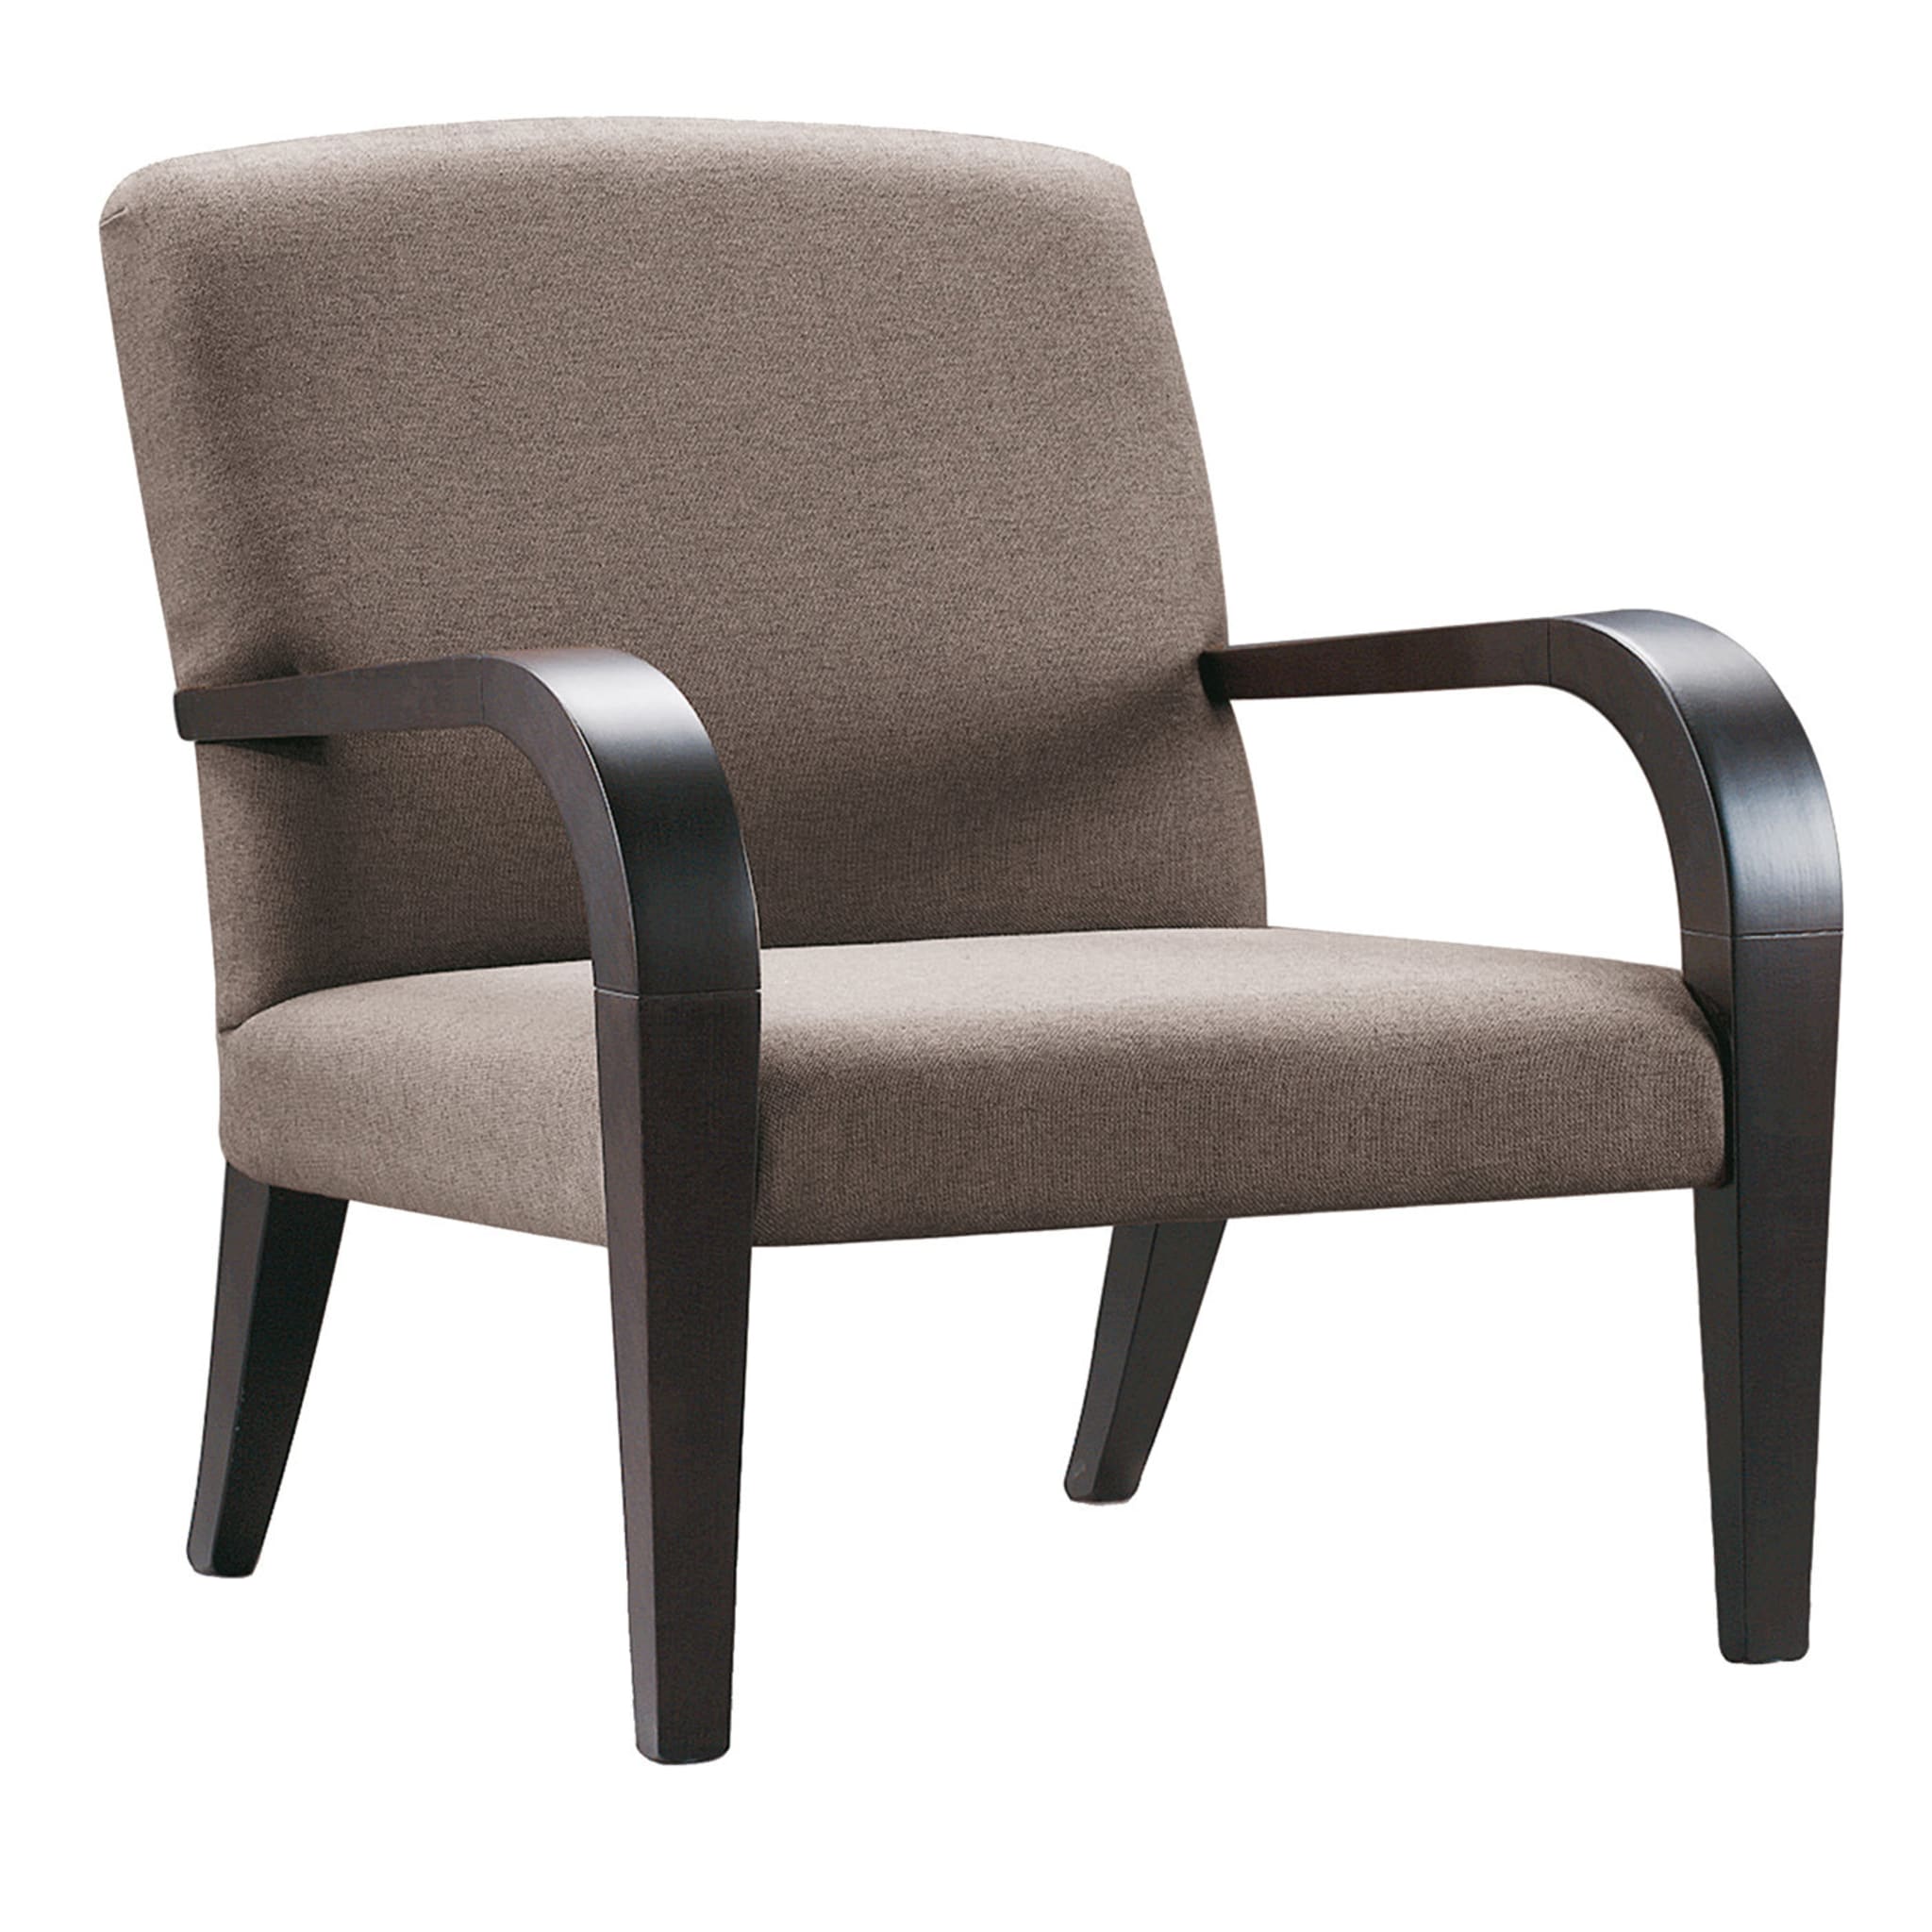 Brauner Tulipwood-Sessel mit geschwungenen Armlehnen - Hauptansicht